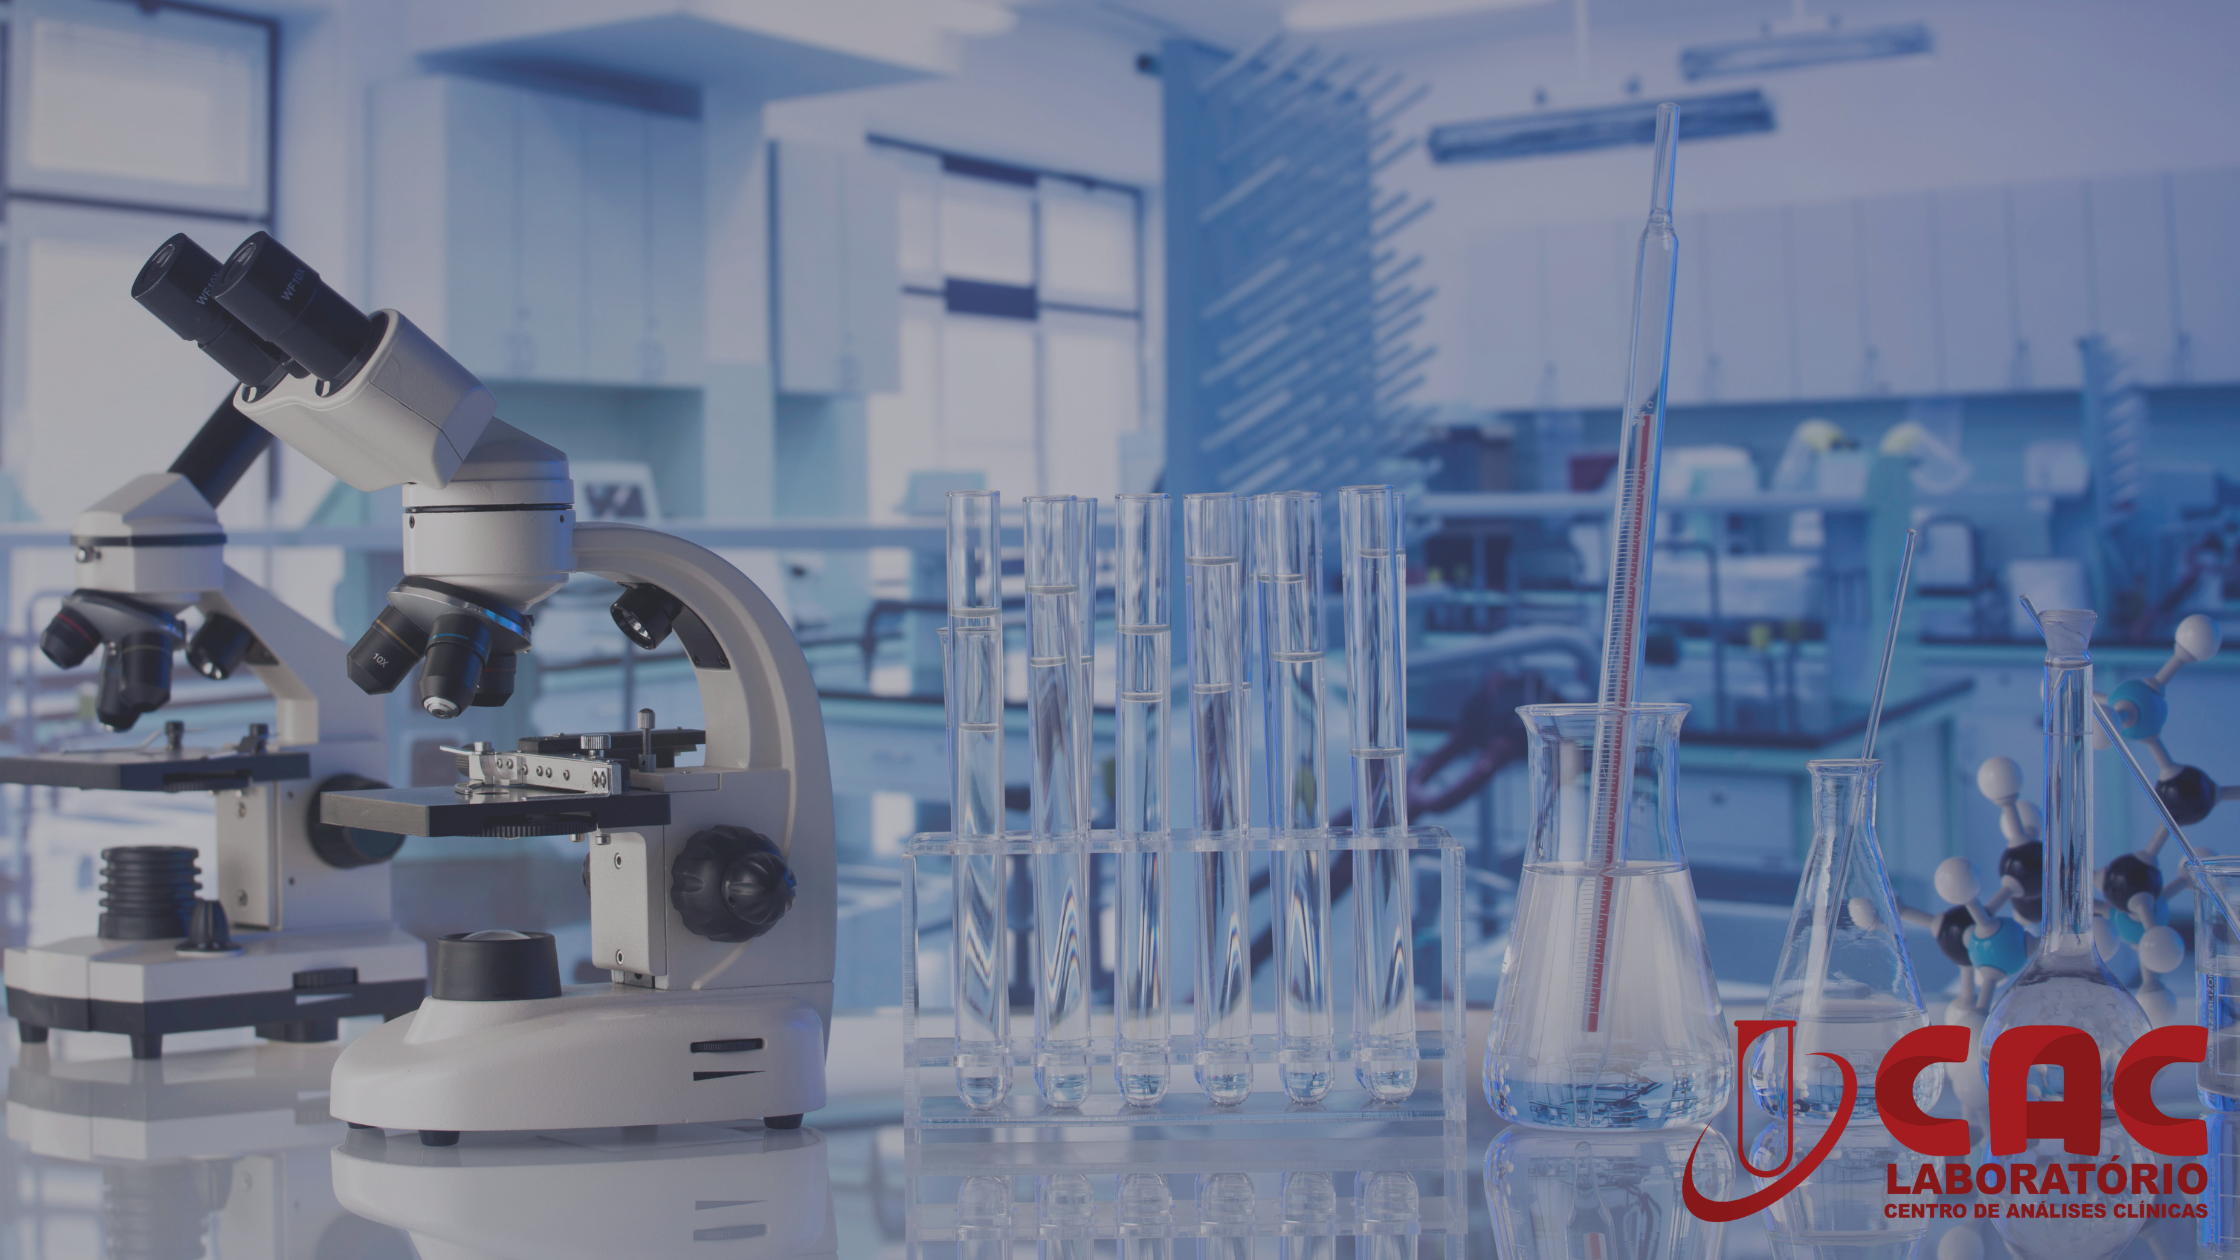 Os procedimentos de biossegurança em laboratórios de análises clínicas visam minimizar os riscos de contaminação e infecção.